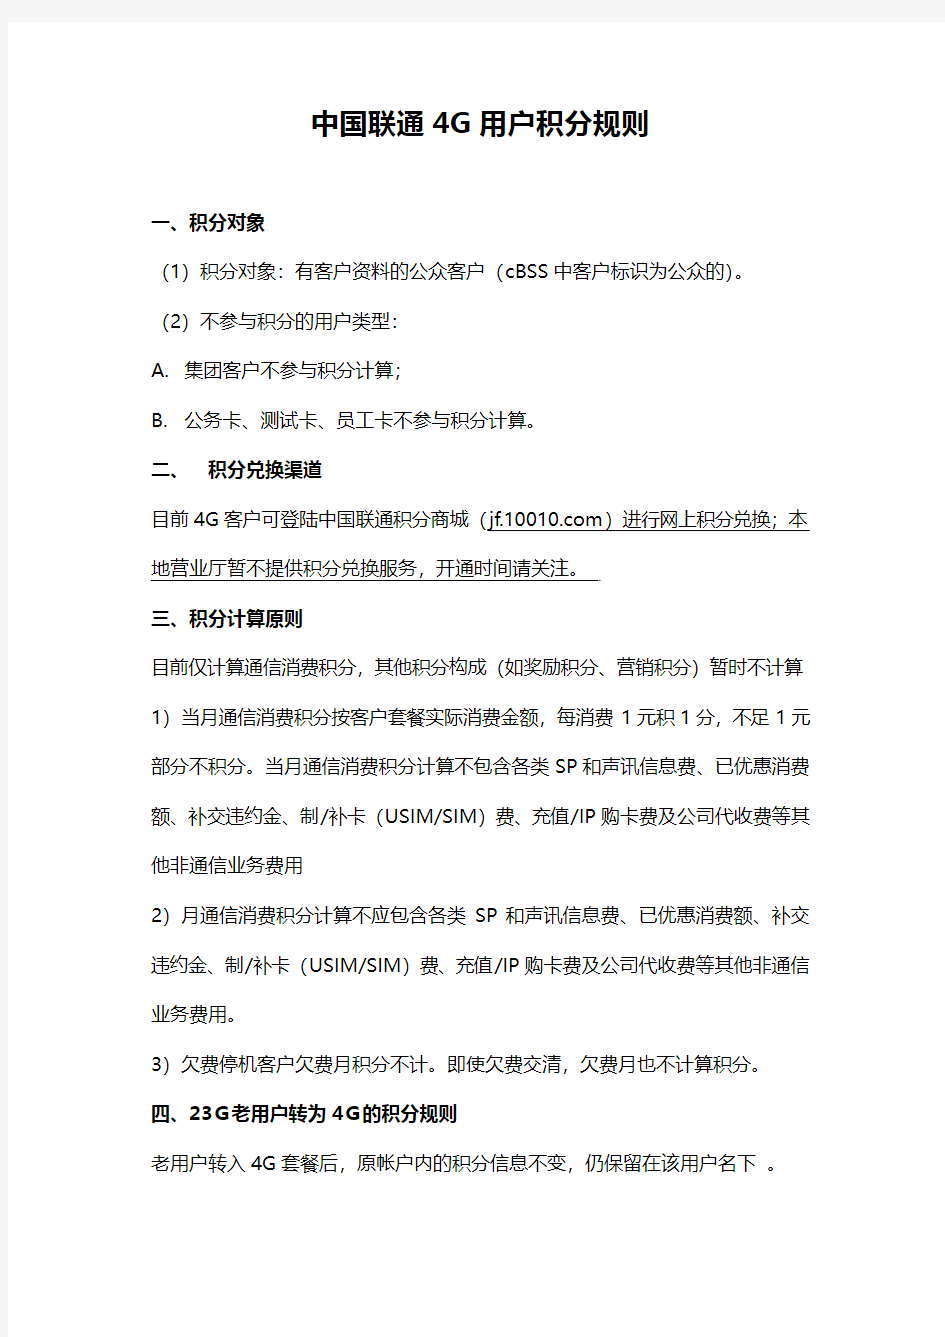 中国联通4G用户积分规则